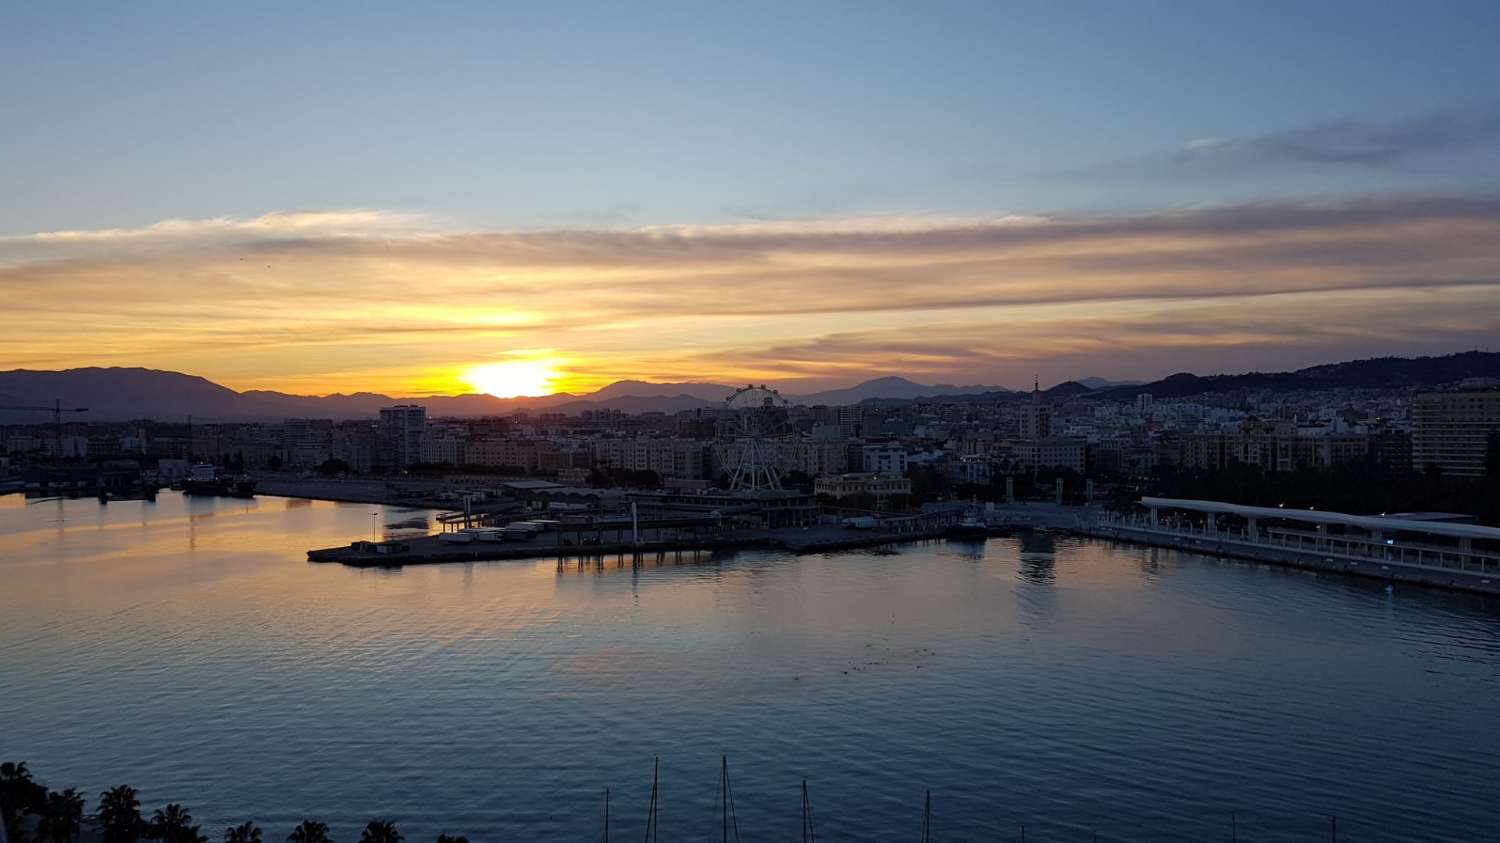 Appartement met uitzicht op de haven en de zee van de stad Malaga